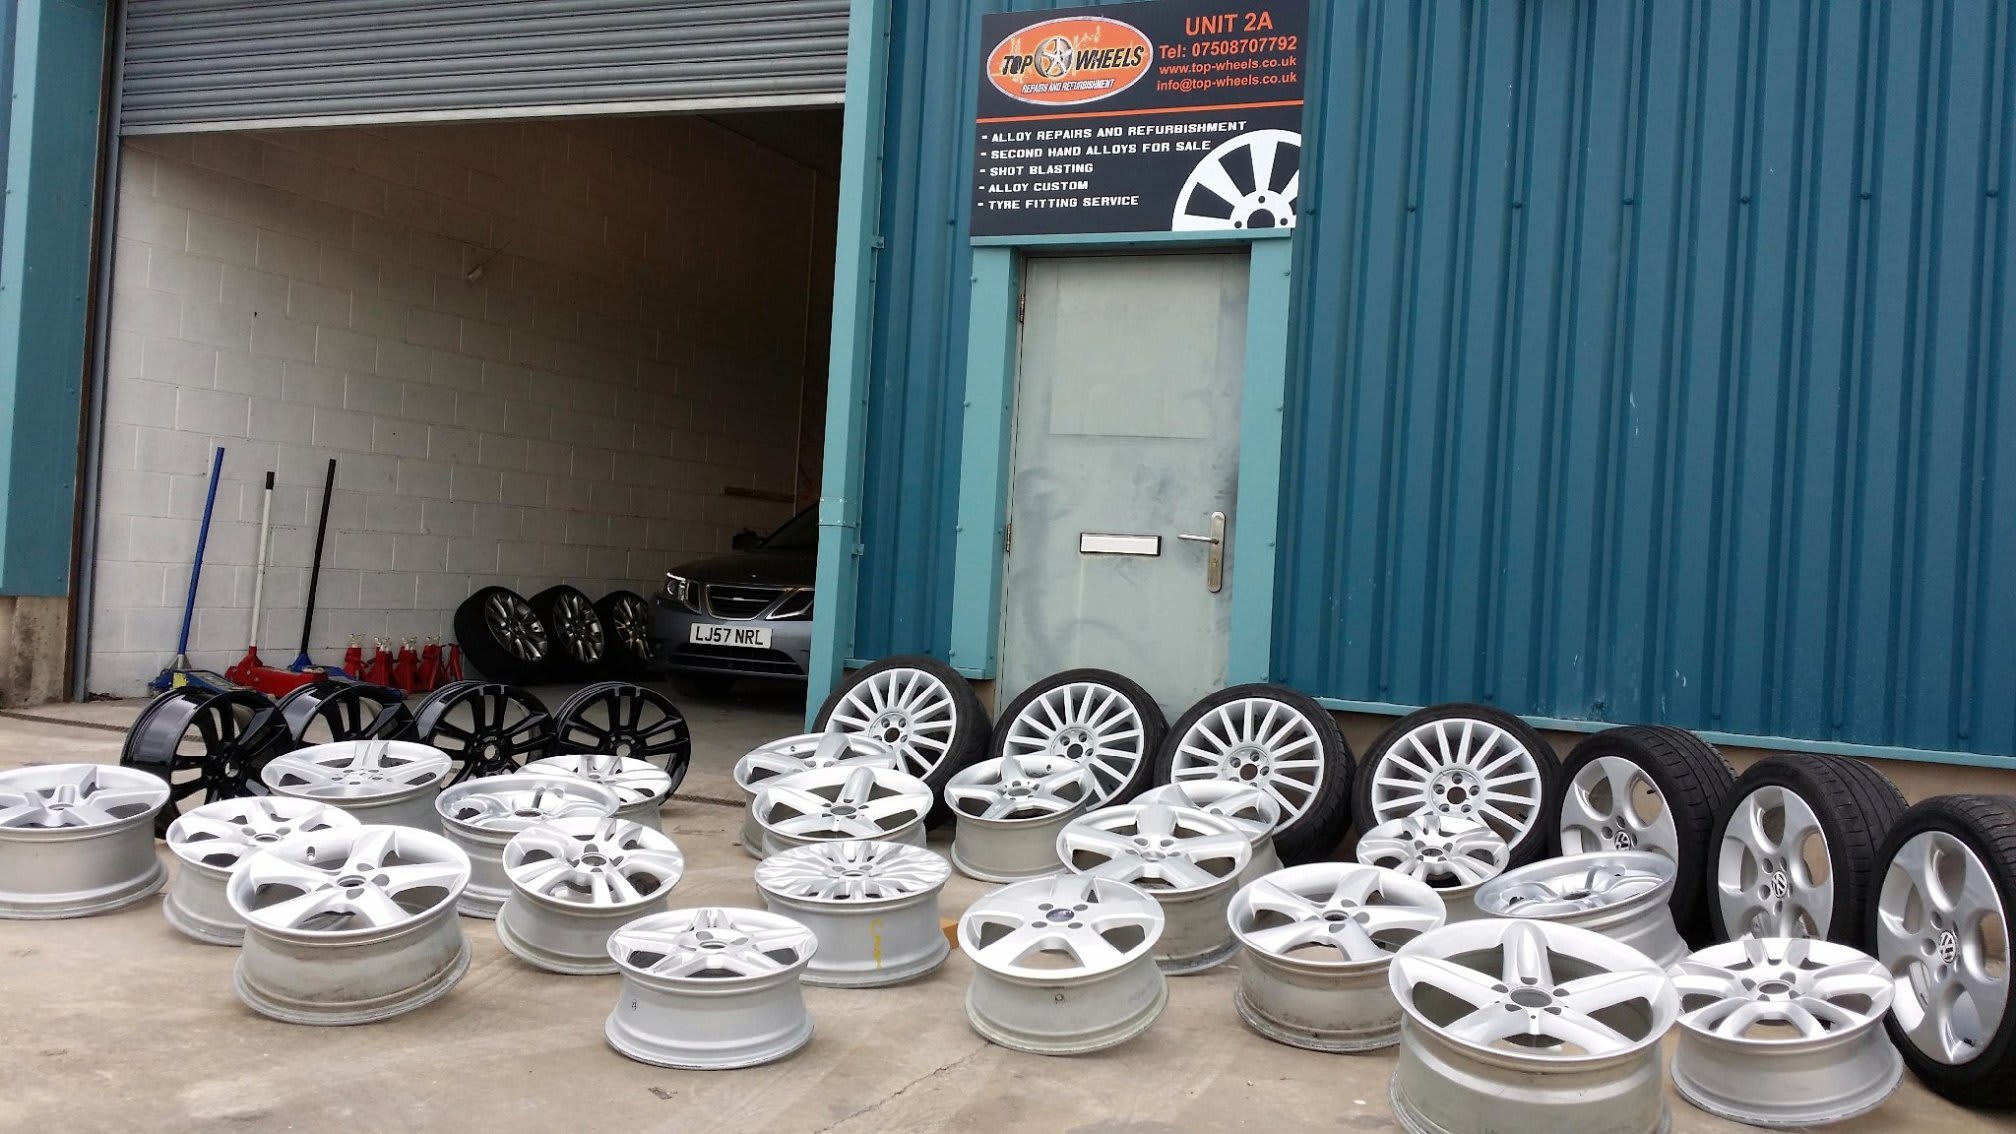 Top Wheels Mobile Alloy Wheel Repairs & Refurbishment Morecambe 07508 707792